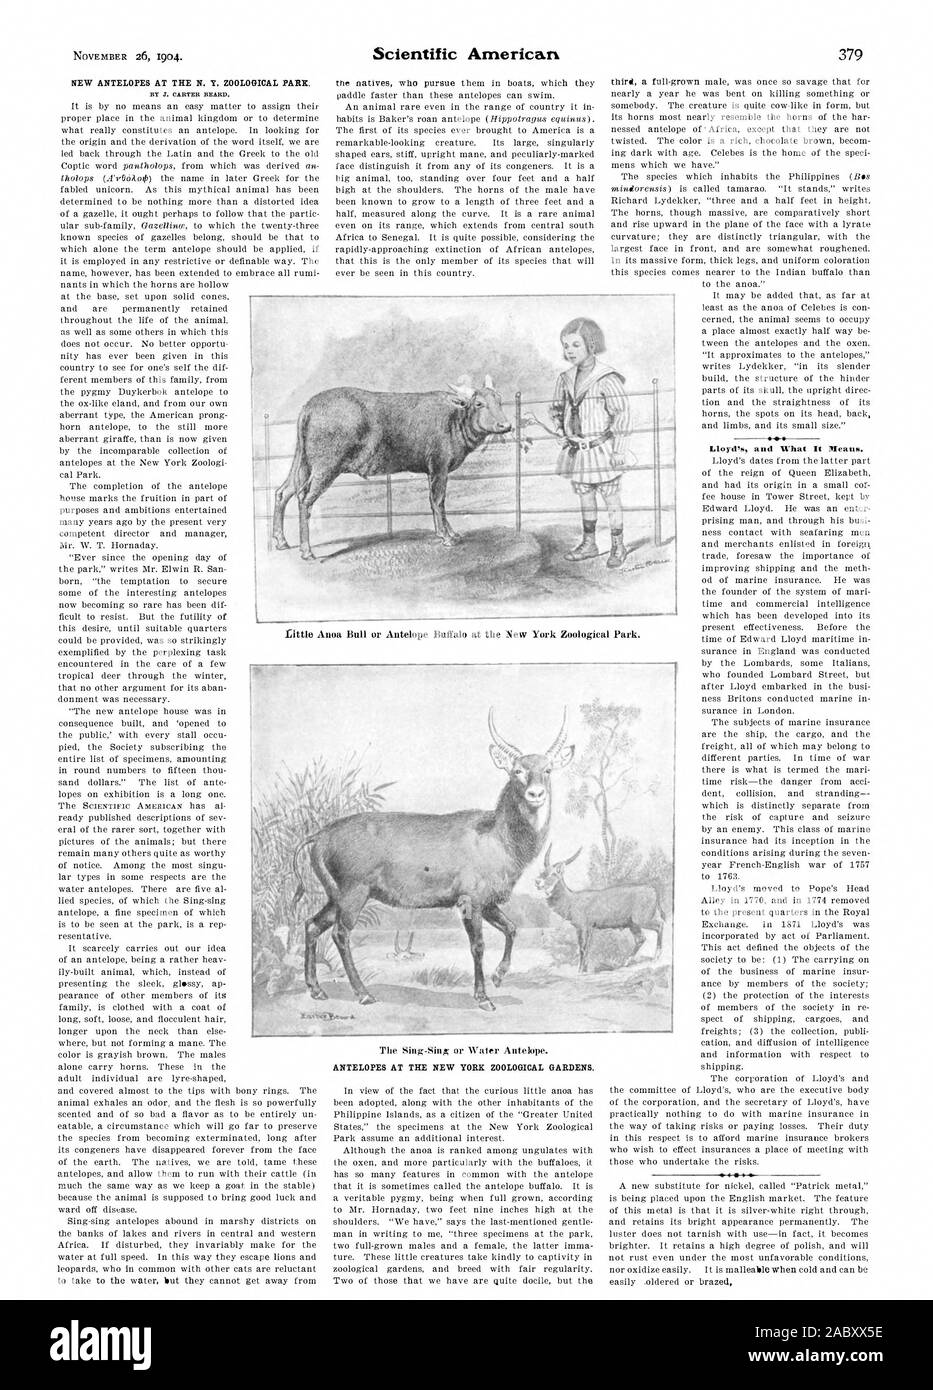 Nouvelles d'Antilopes AU N. Y. ZOOLOGICAL PARK. Antilopes AU NEW YORK Zoological Gardens. Lloyd's et ce que signifie il., Scientific American, 1904-11-26 Banque D'Images